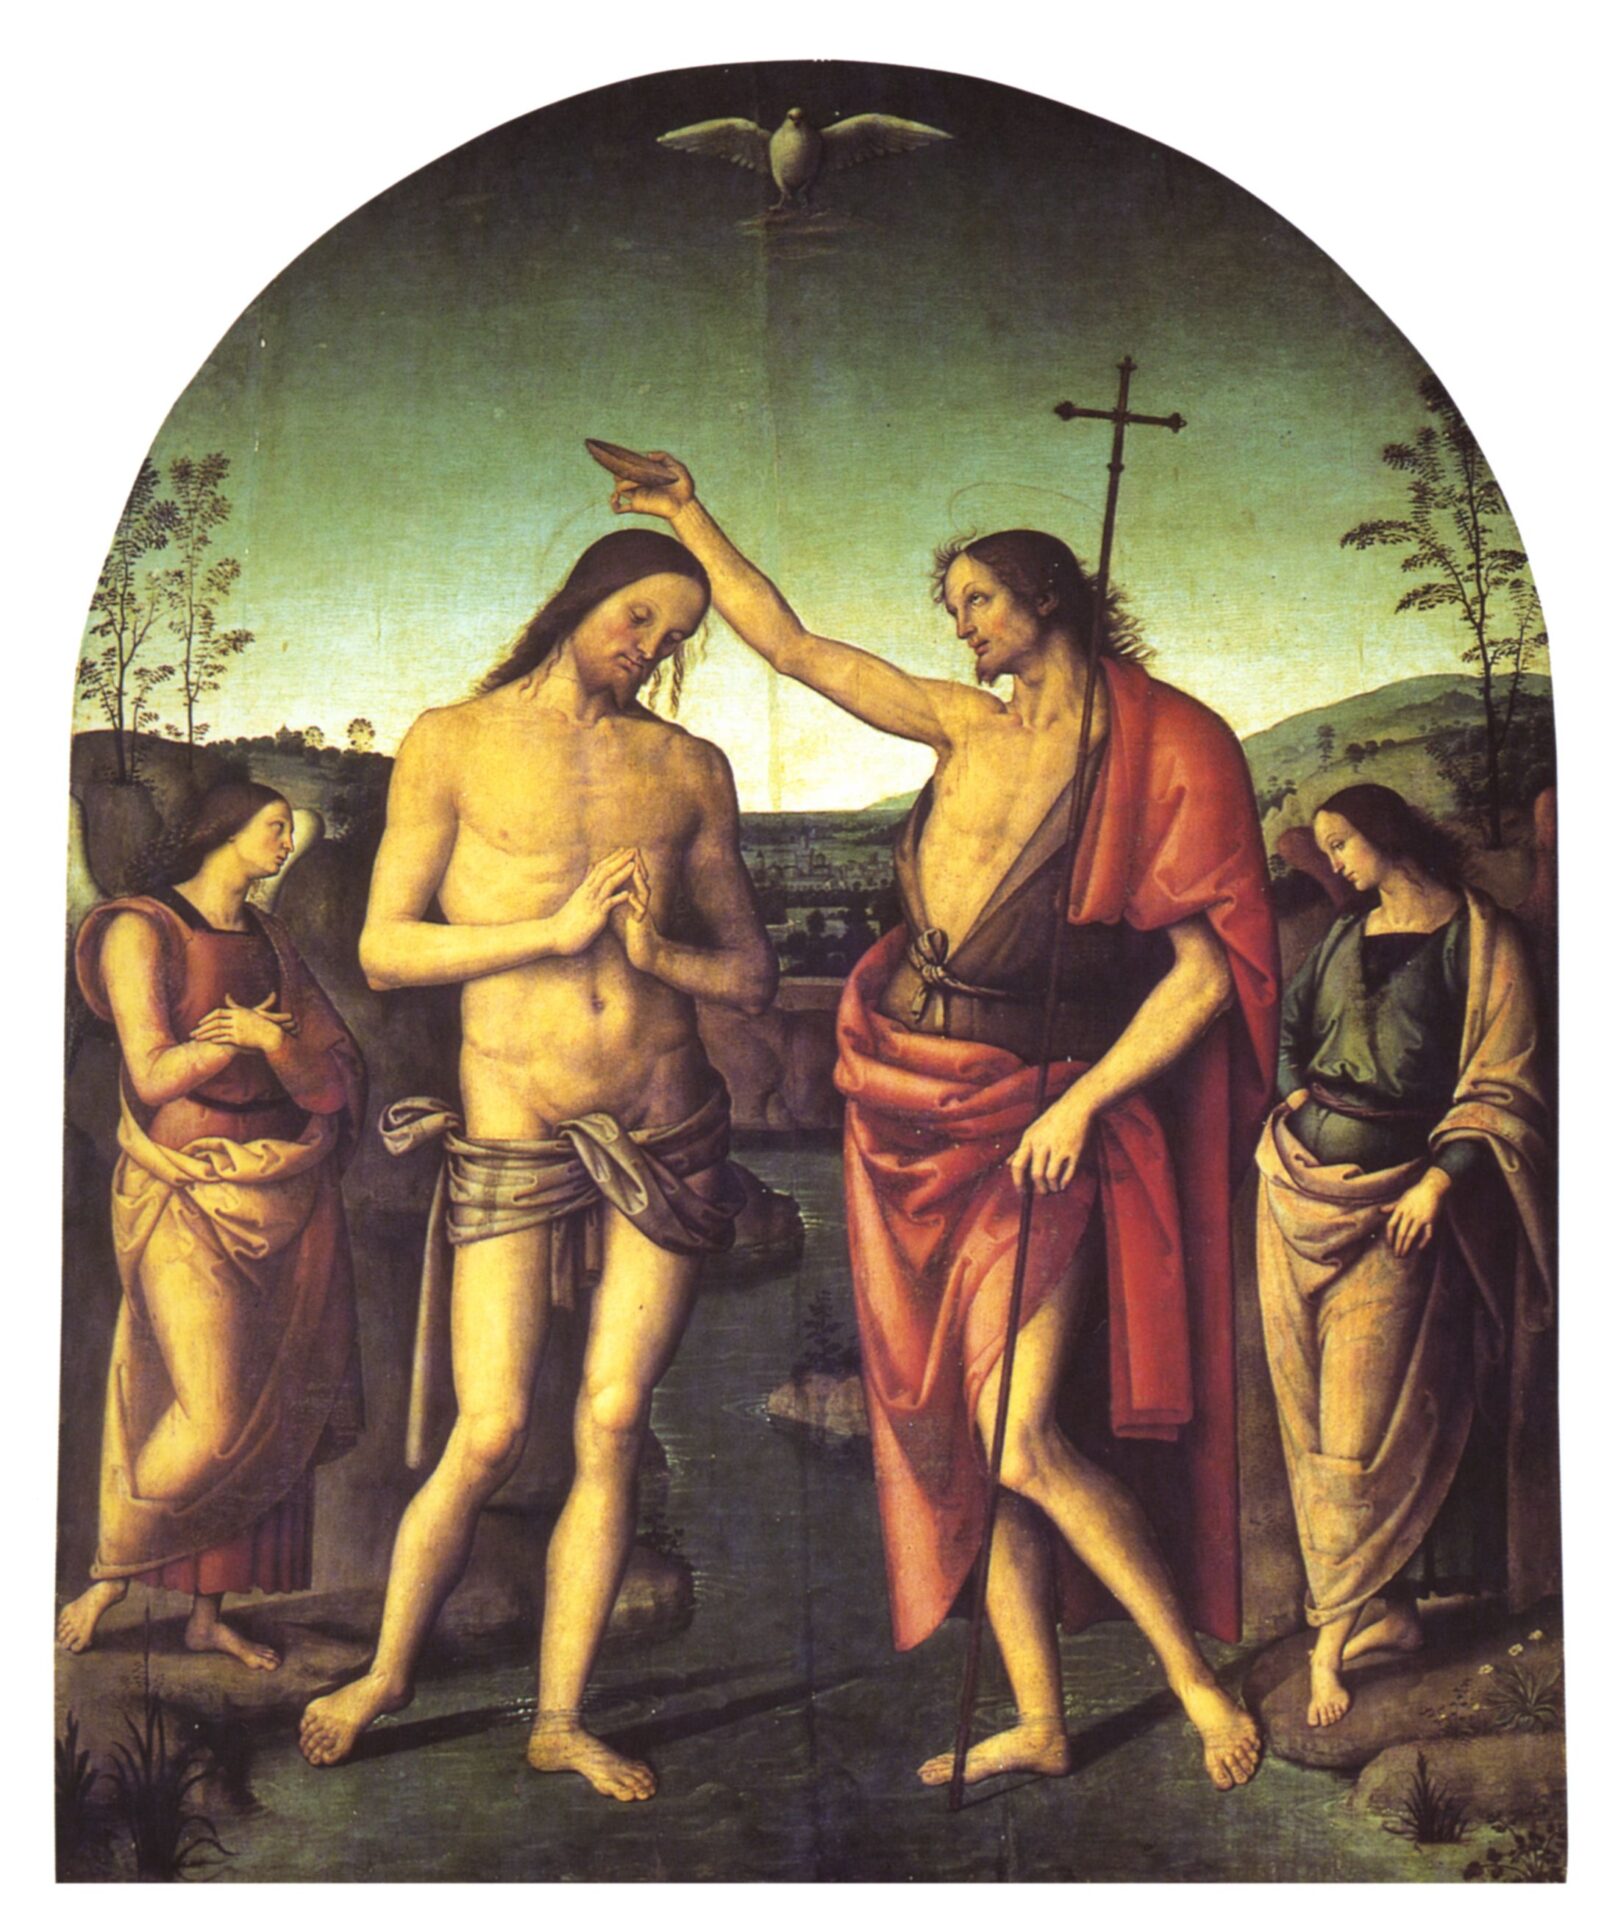 (Perugino, Battesimo di Cristo, Duomo, Città della Pieve, 1510)